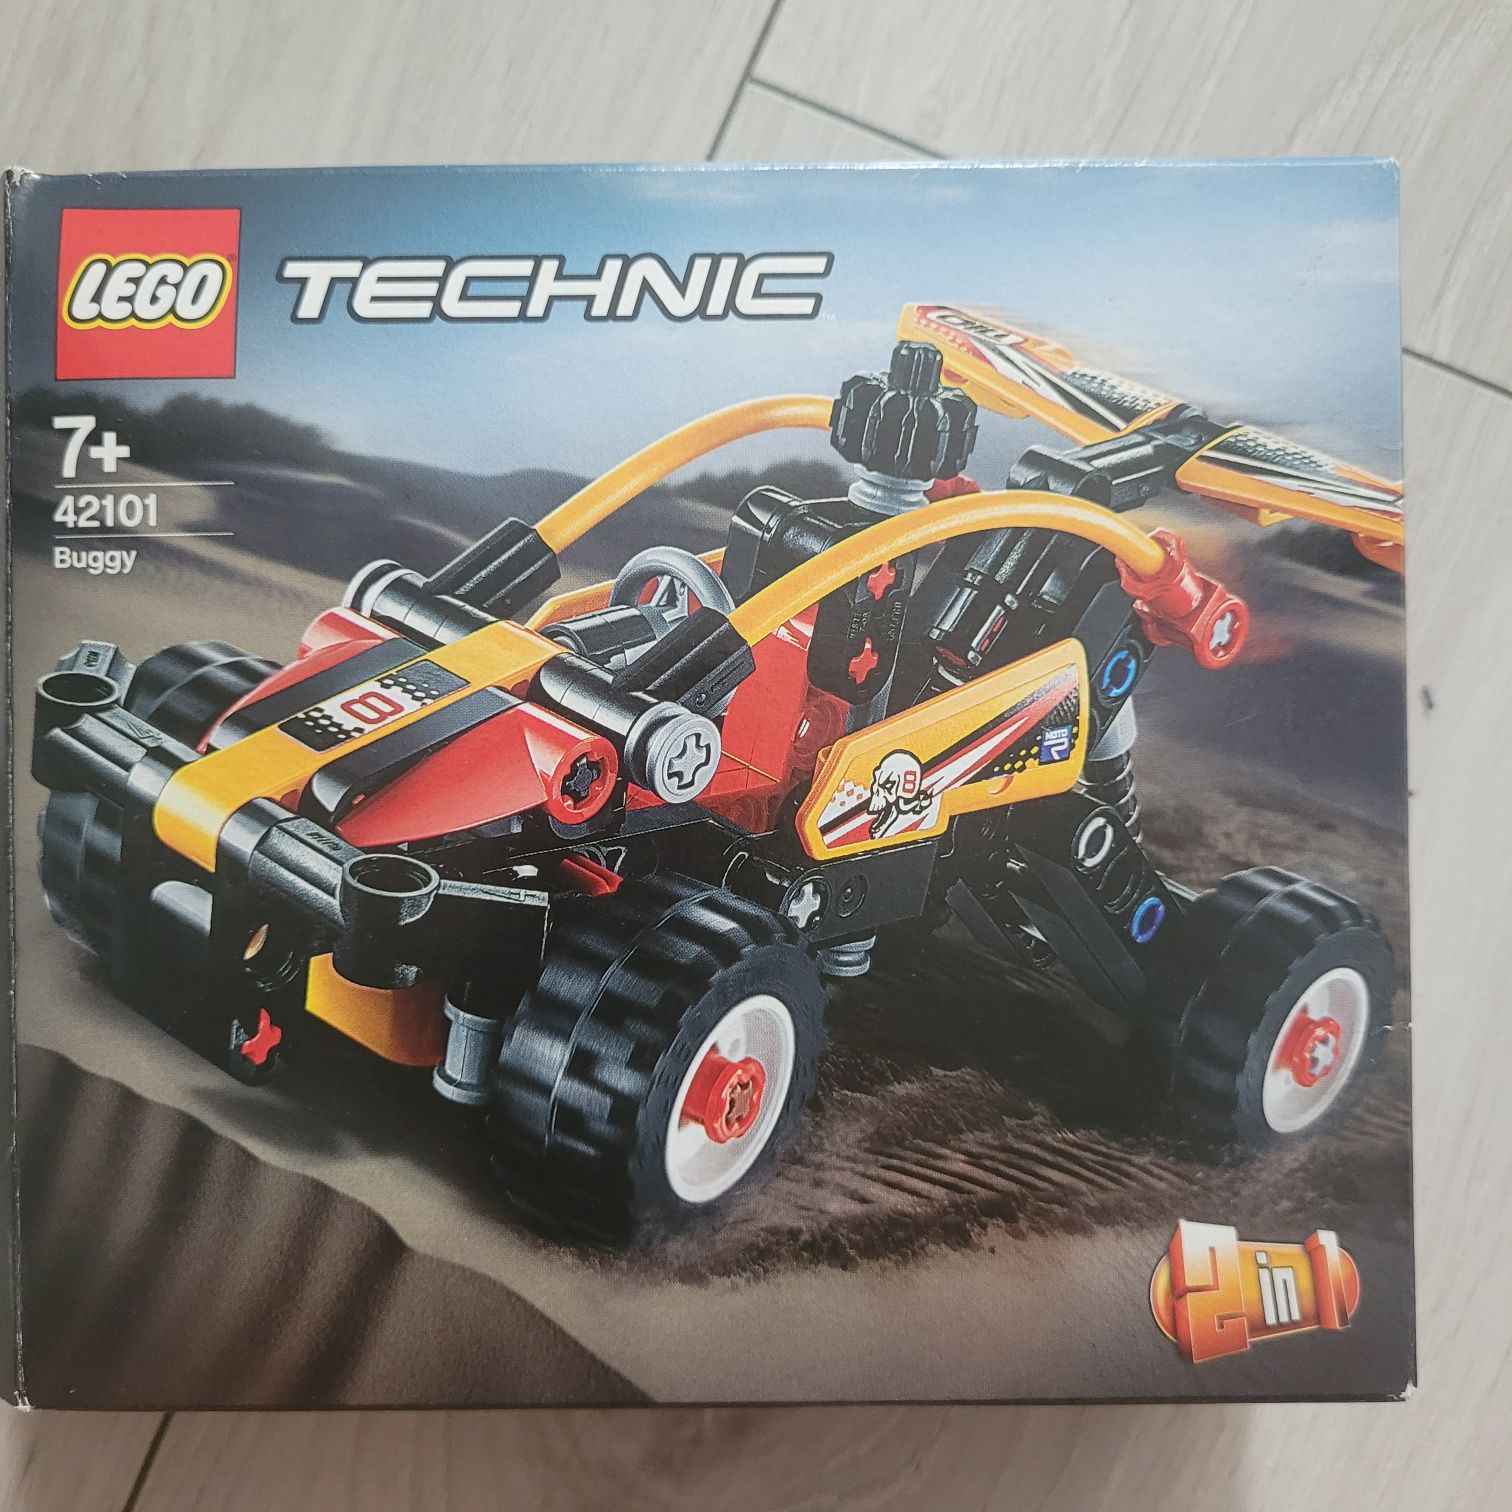 Auto lego Technic 7+